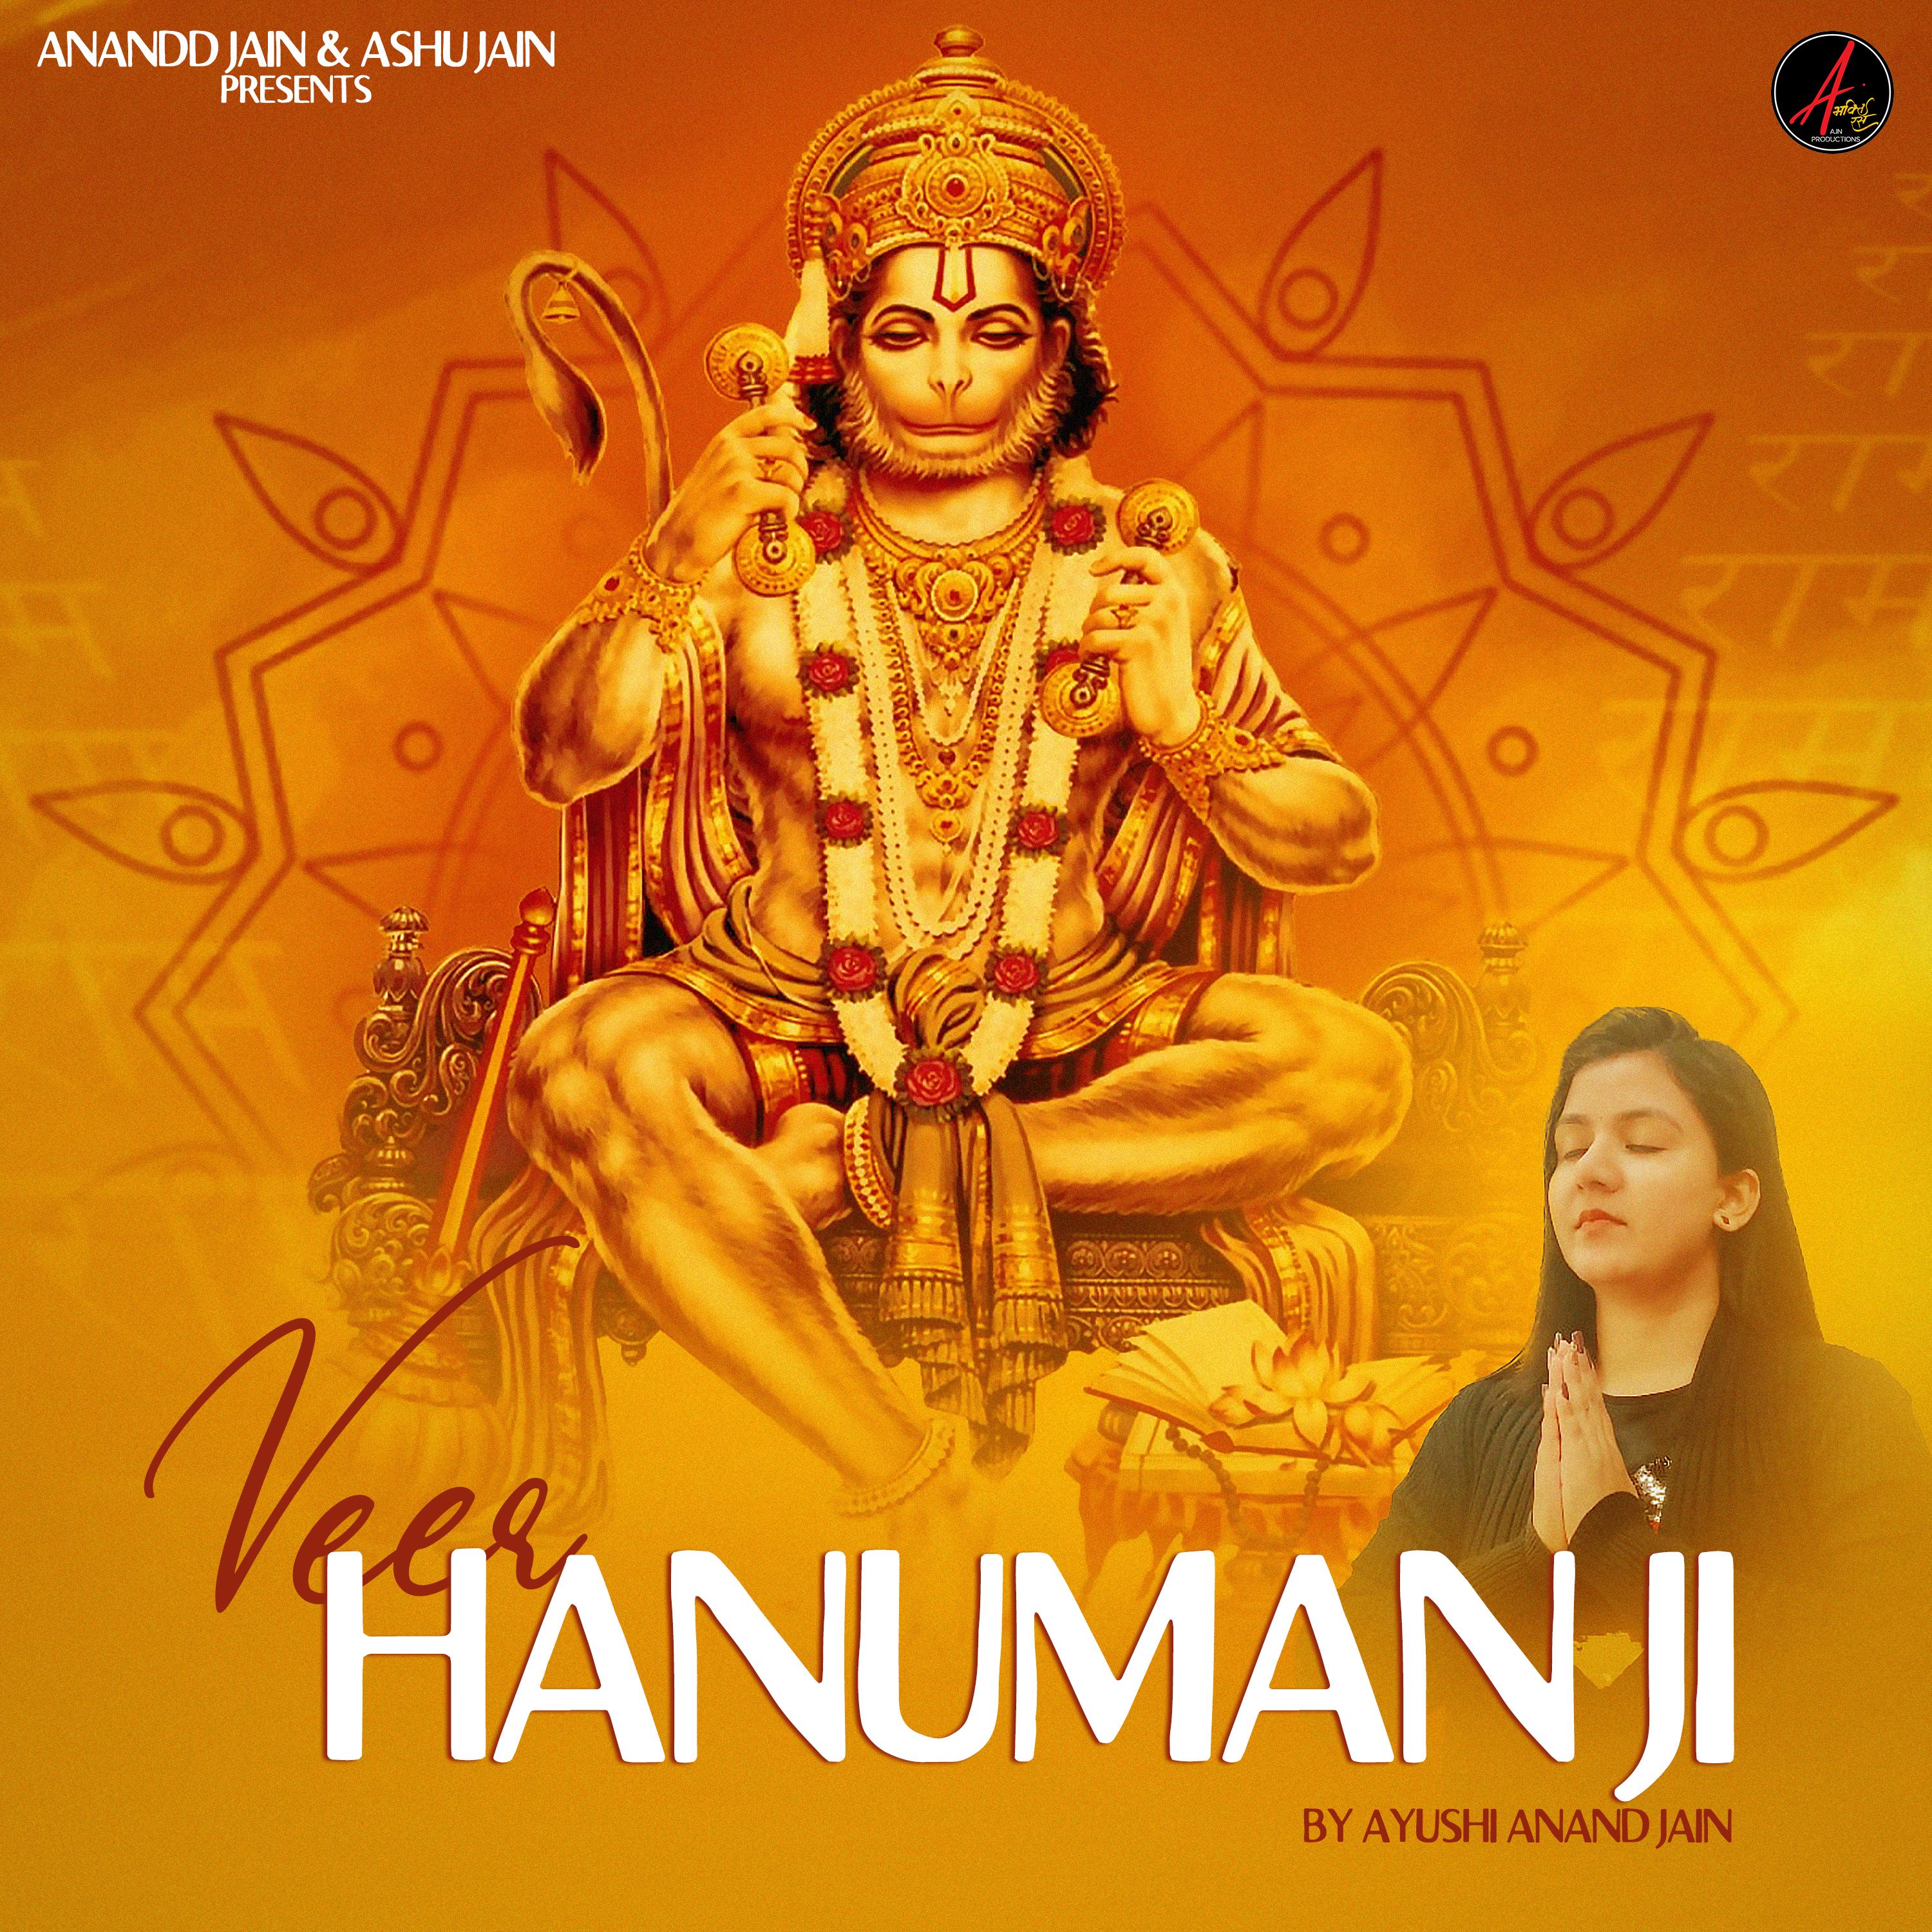 Veer Hanuman Ji 